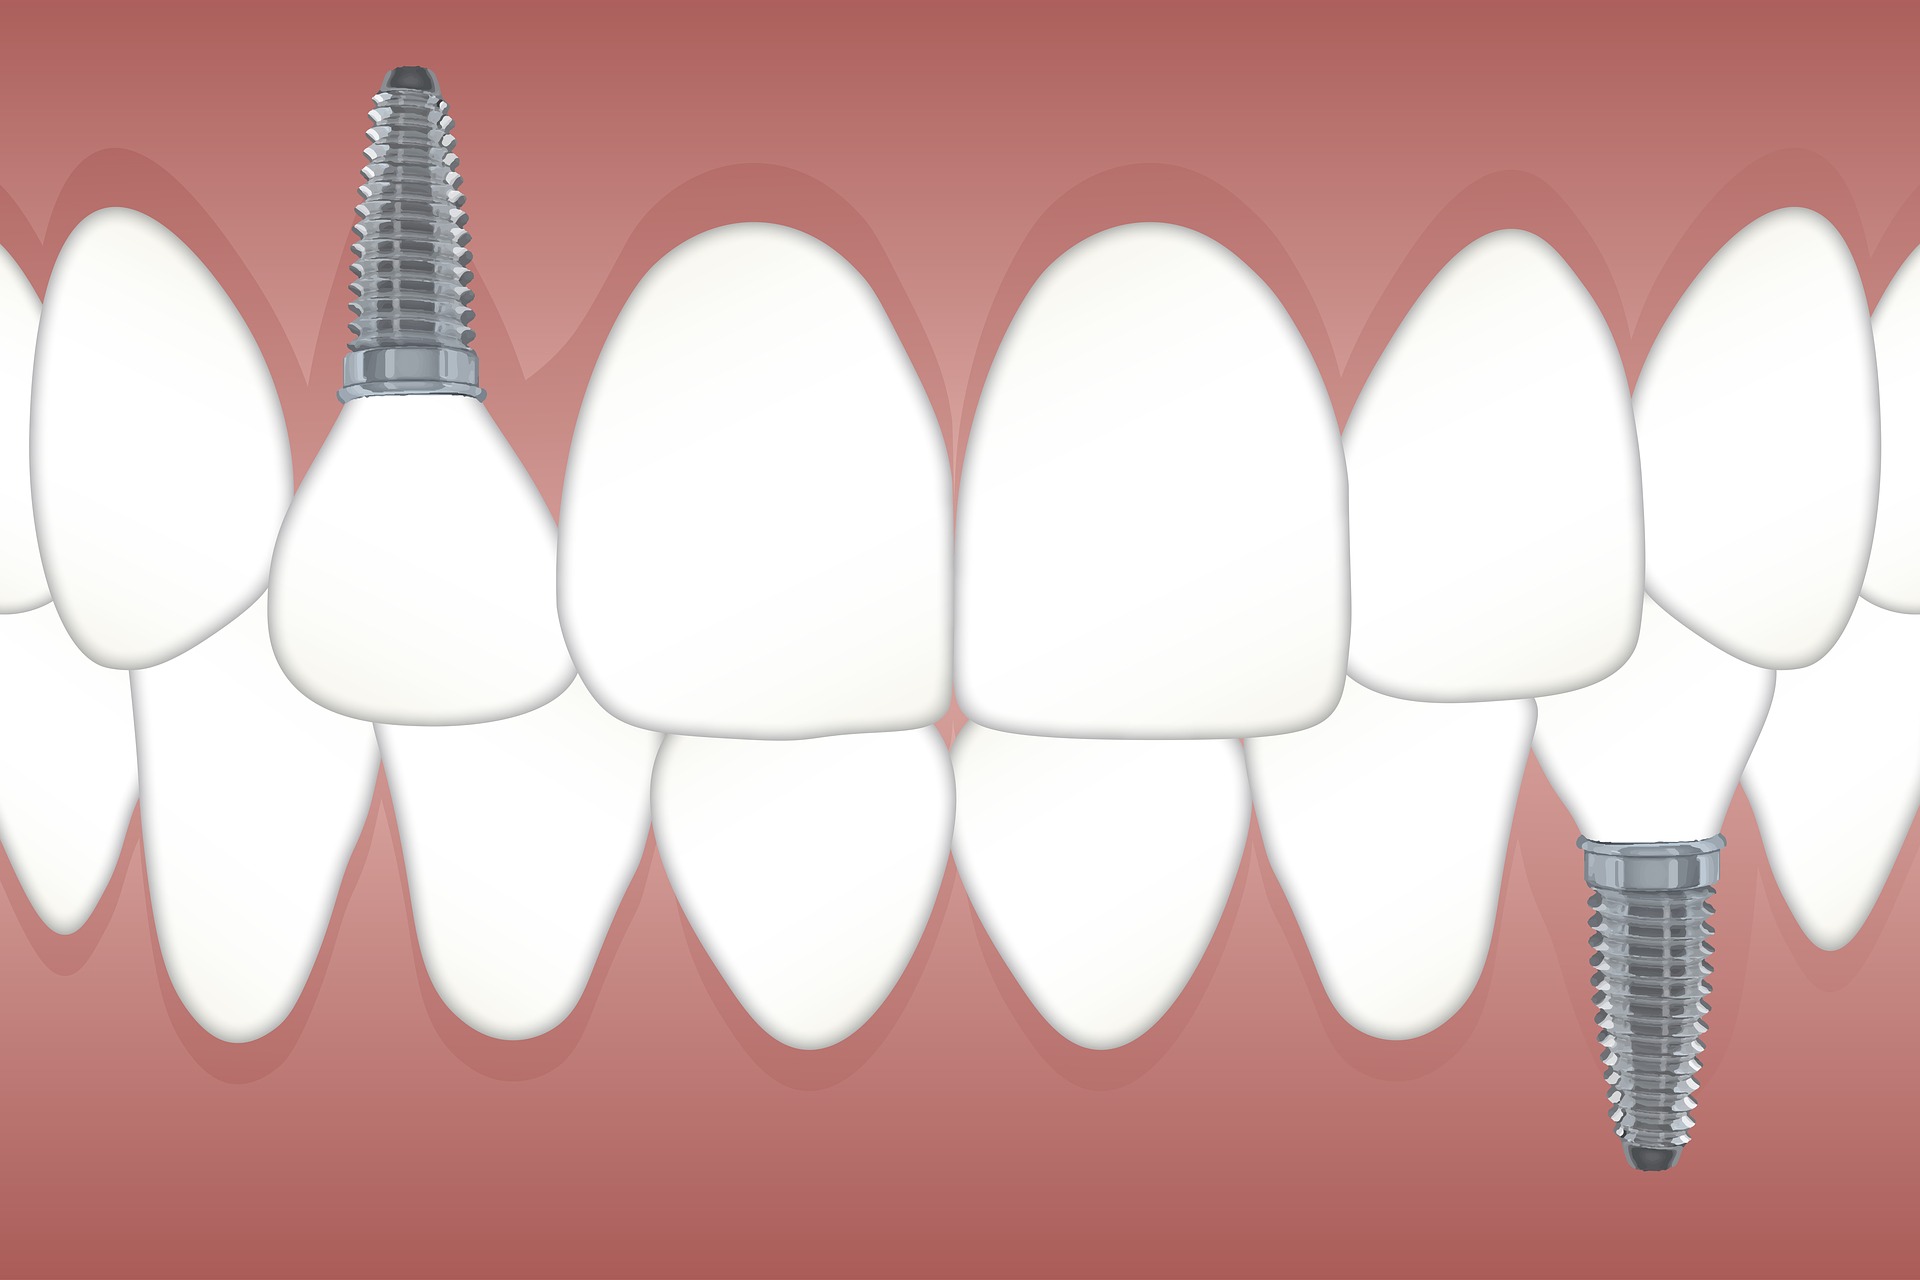 Jak wygląda schemat implantów dentystycznych